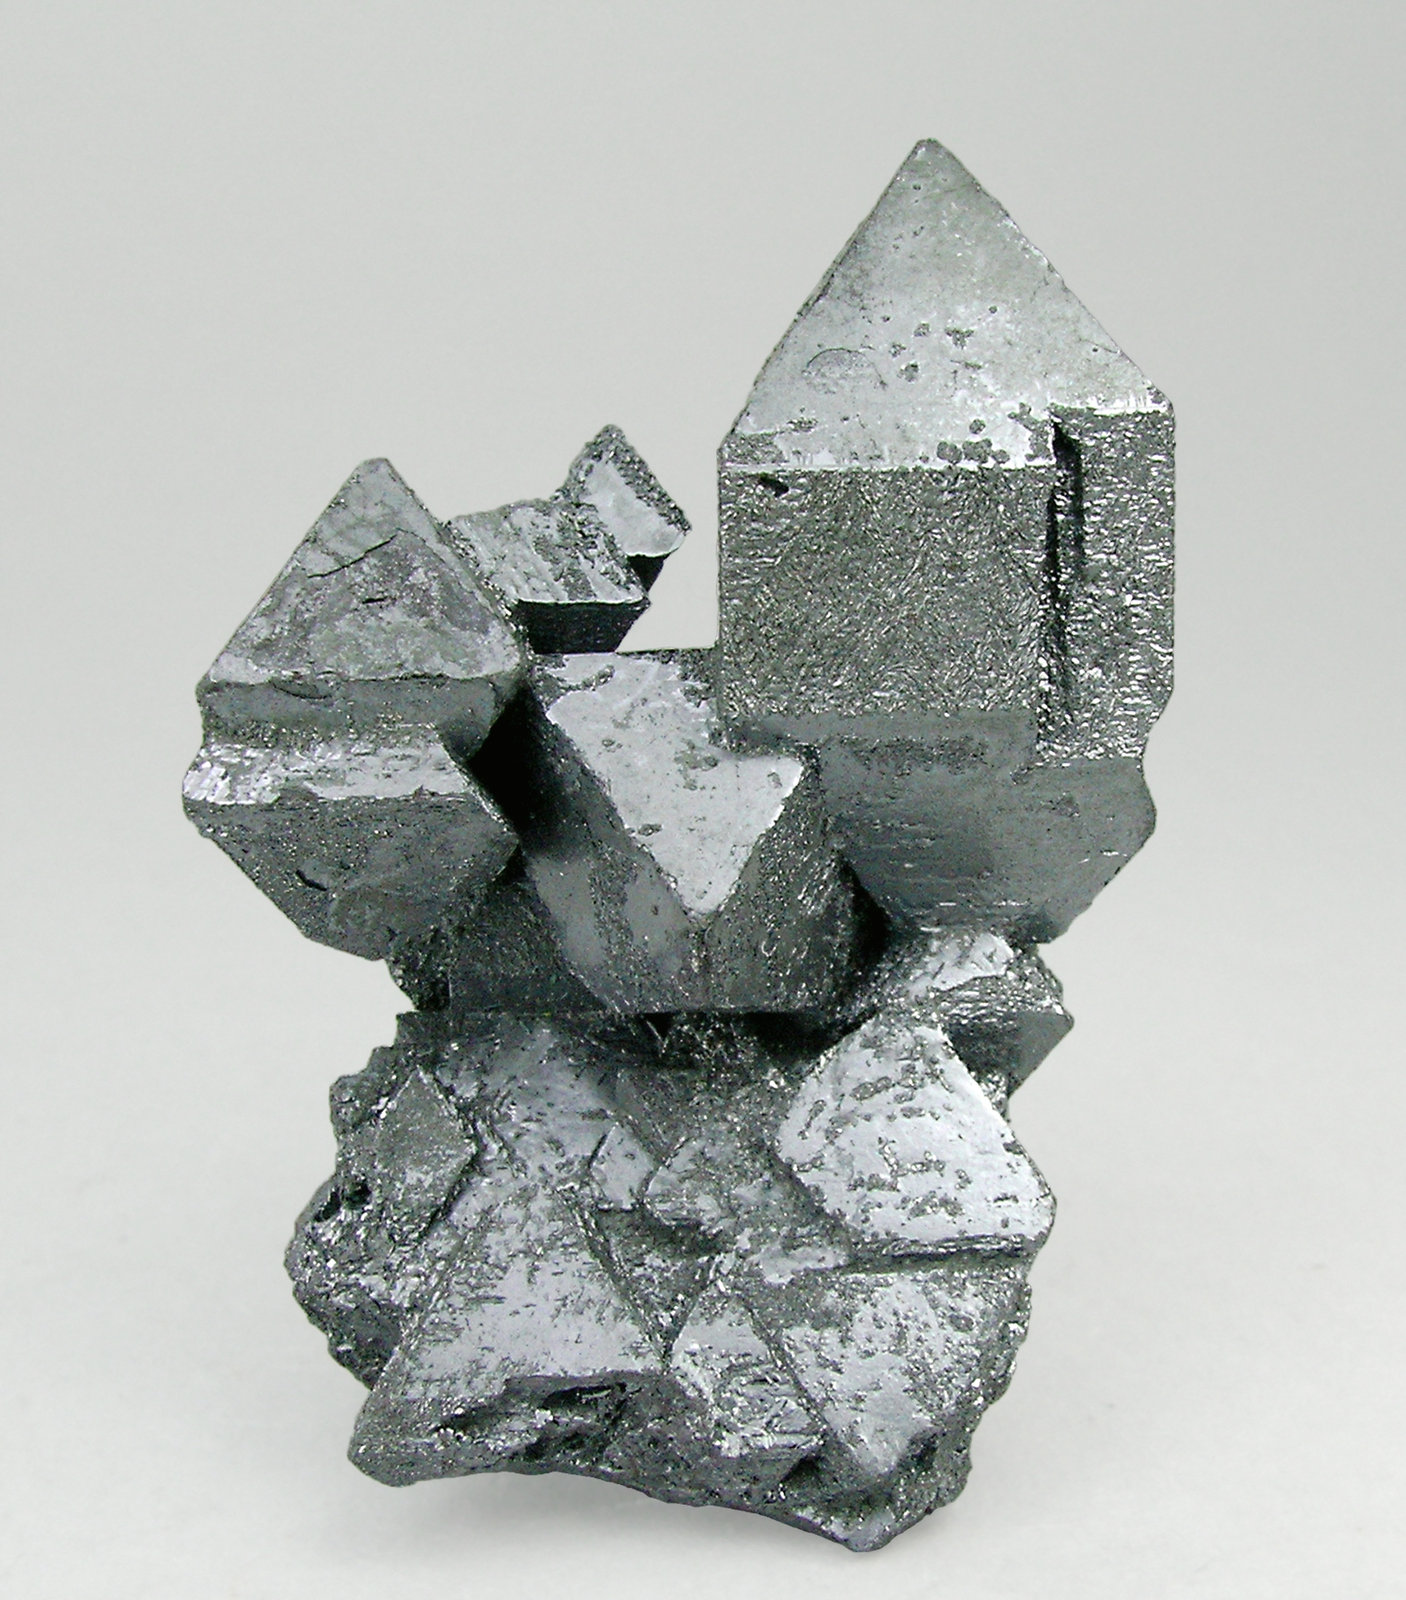 specimens/s_imagesQ4/Hematite-TE13Q4f.jpg